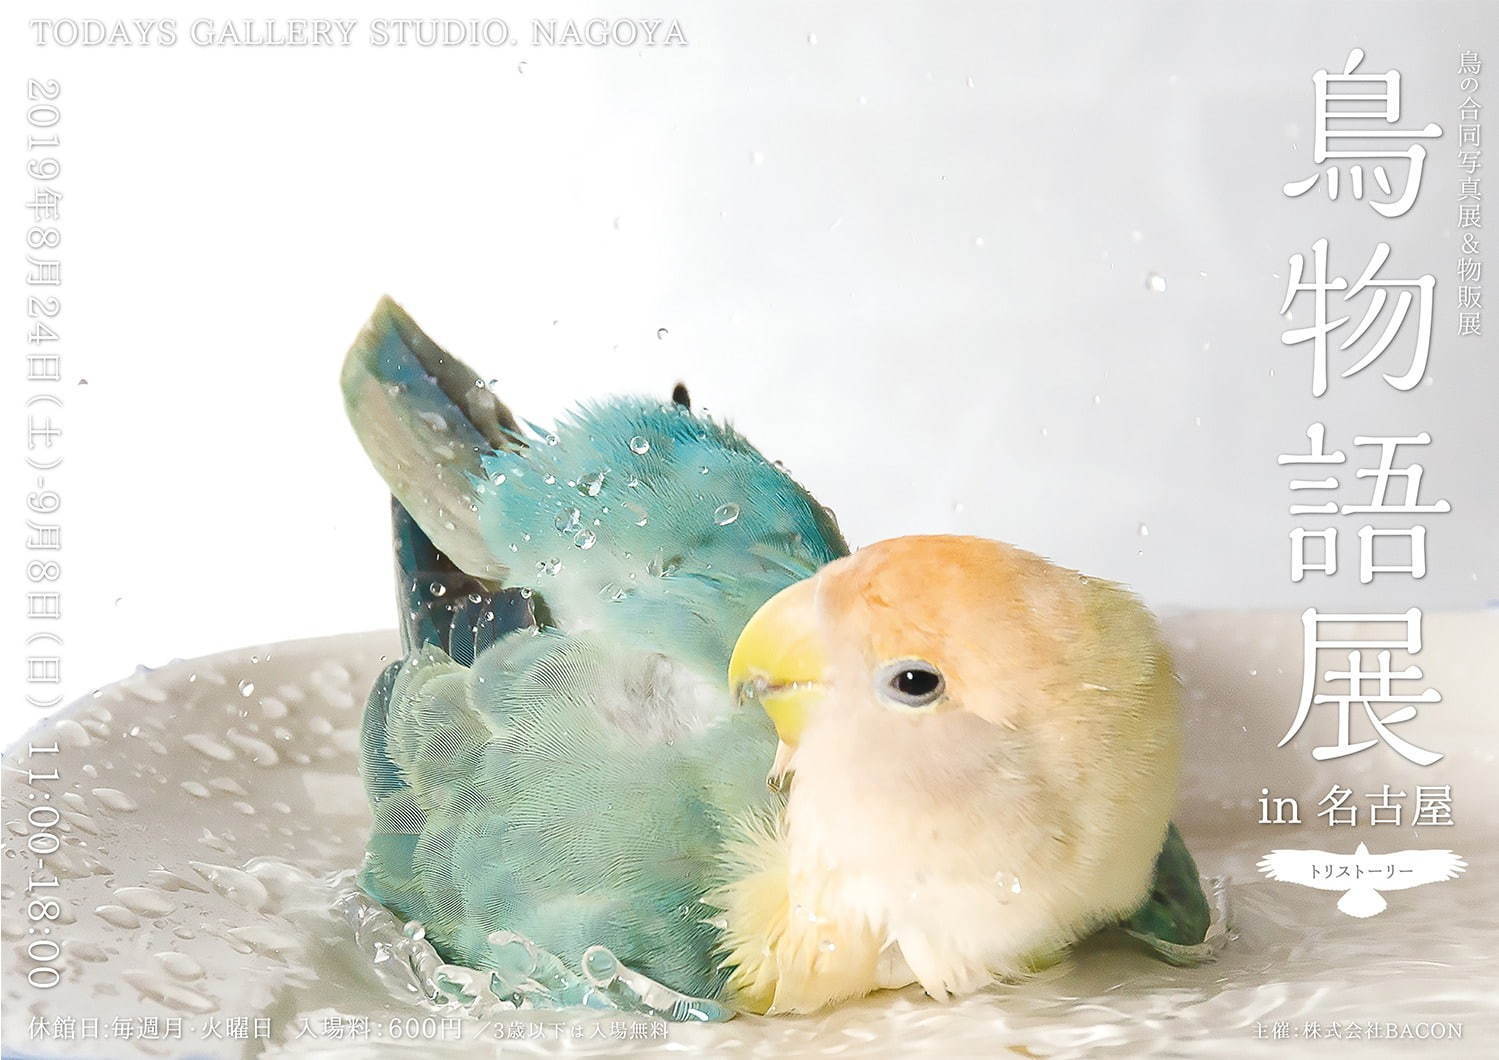 「鳥物語トリストーリー展」名古屋で、鳥の“一瞬の美しさ”を表した写真展＆ハンドメイドグッズ物販｜写真31